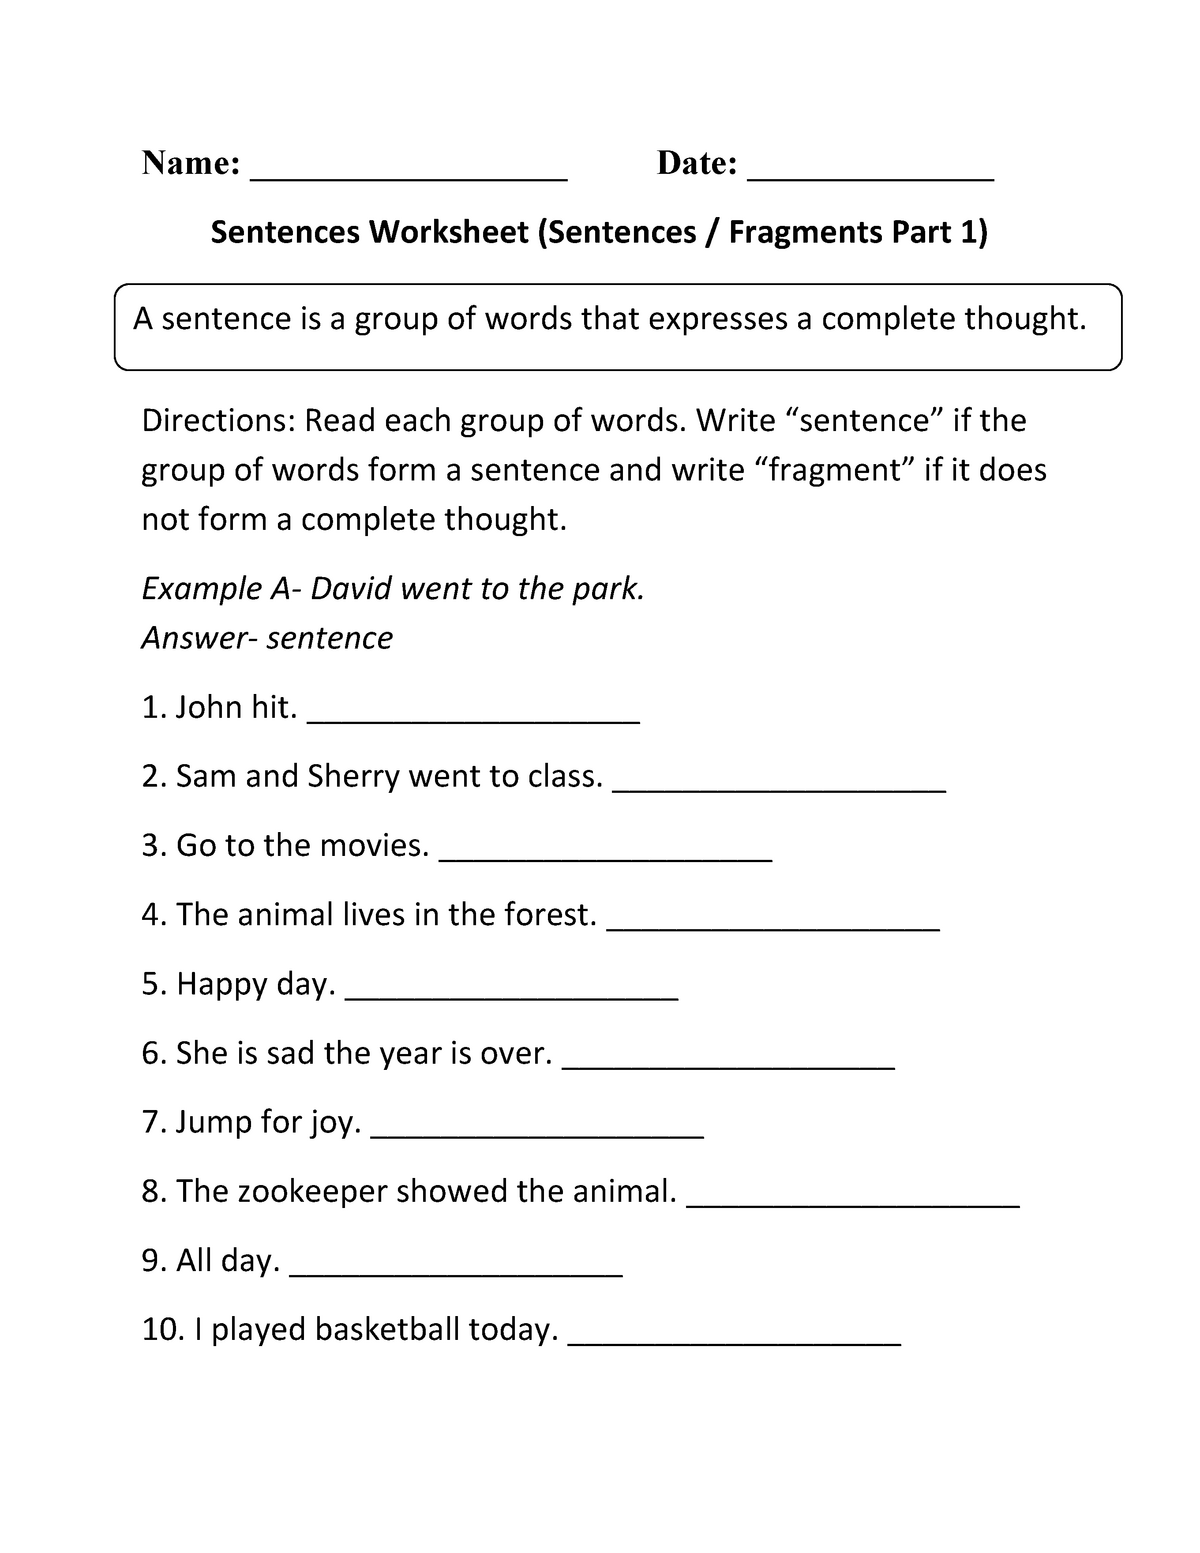 sentence-worksheet-for-grade-3-name-date